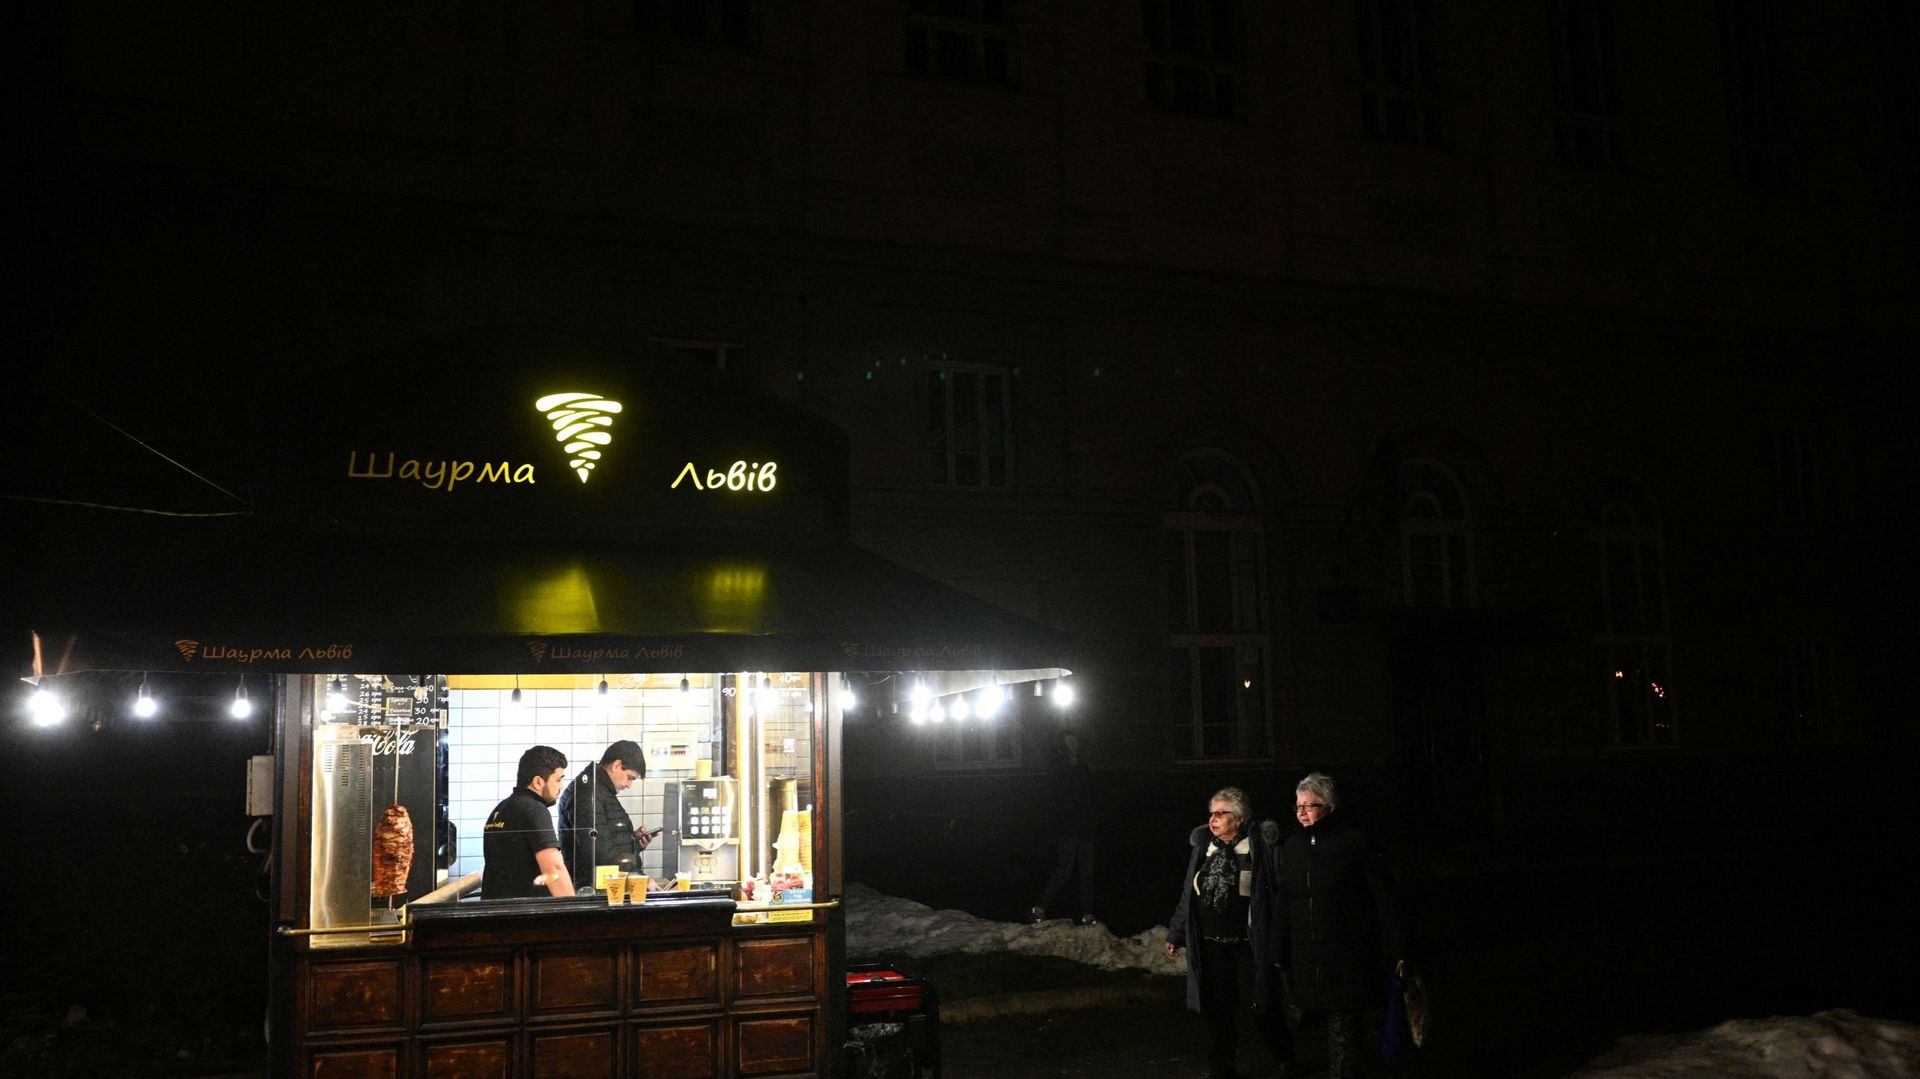 Des personnes passent devant un kiosque où l’électricité provient de générateurs électriques, dans le centre de la ville de Lviv, dans l’ouest de l’Ukraine, pendant la panne d’électricité, le 22 décembre 2022.